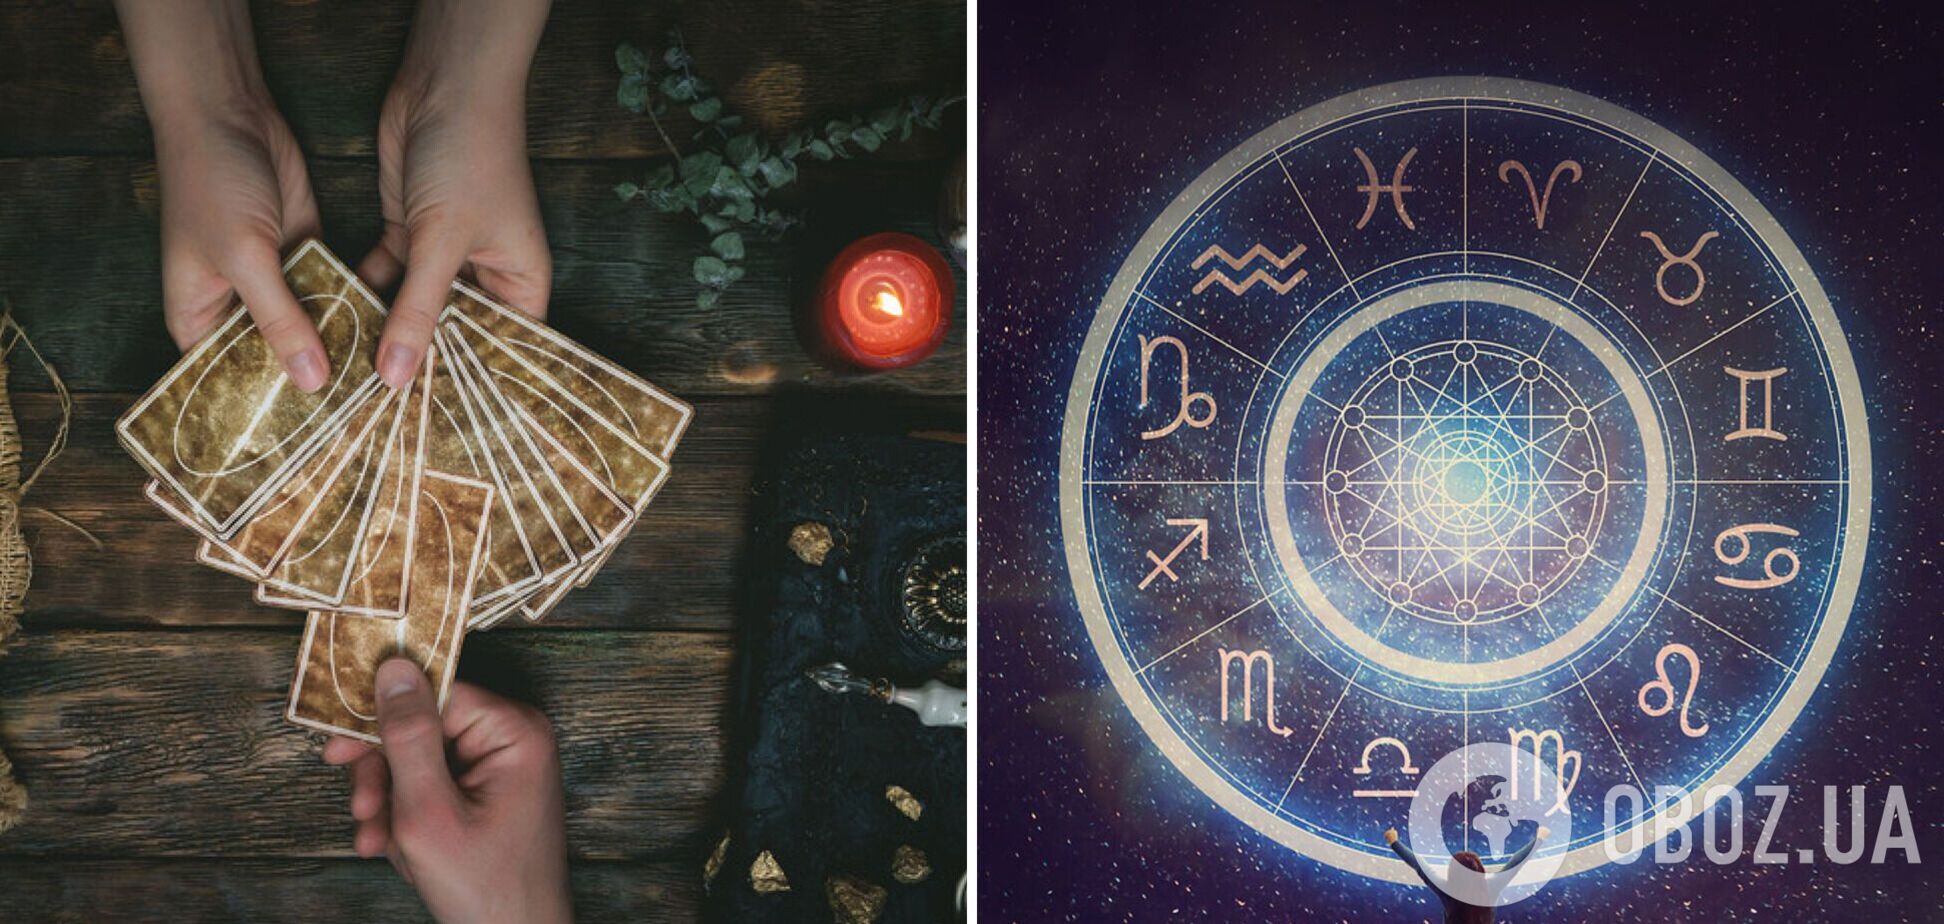 Ждут новые проекты и болезненные расставания: гороскоп Таро на неделю для всех знаков зодиака